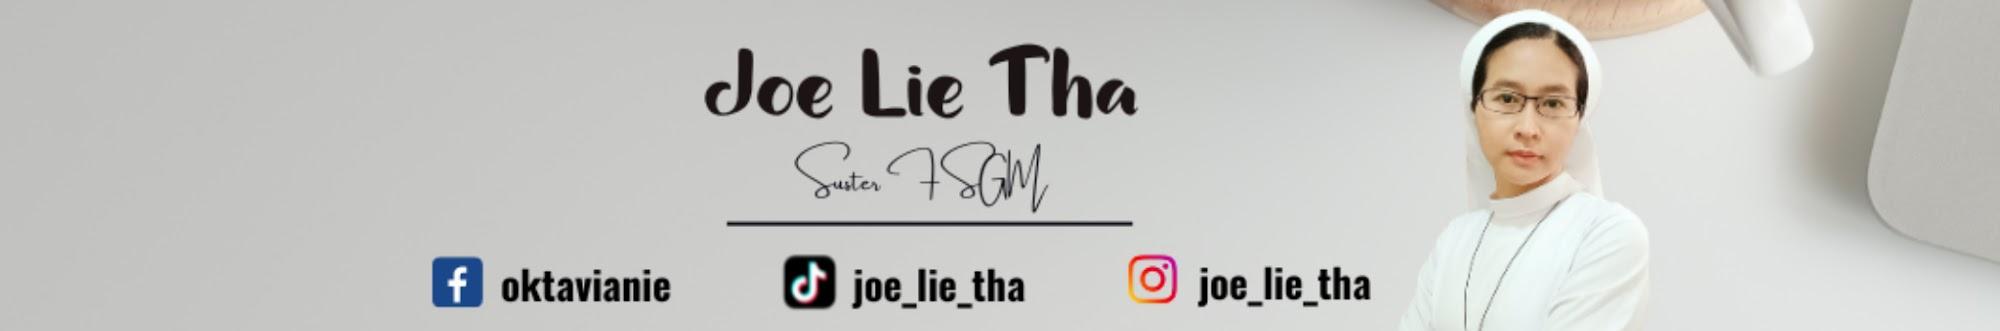 Joe Lie Tha